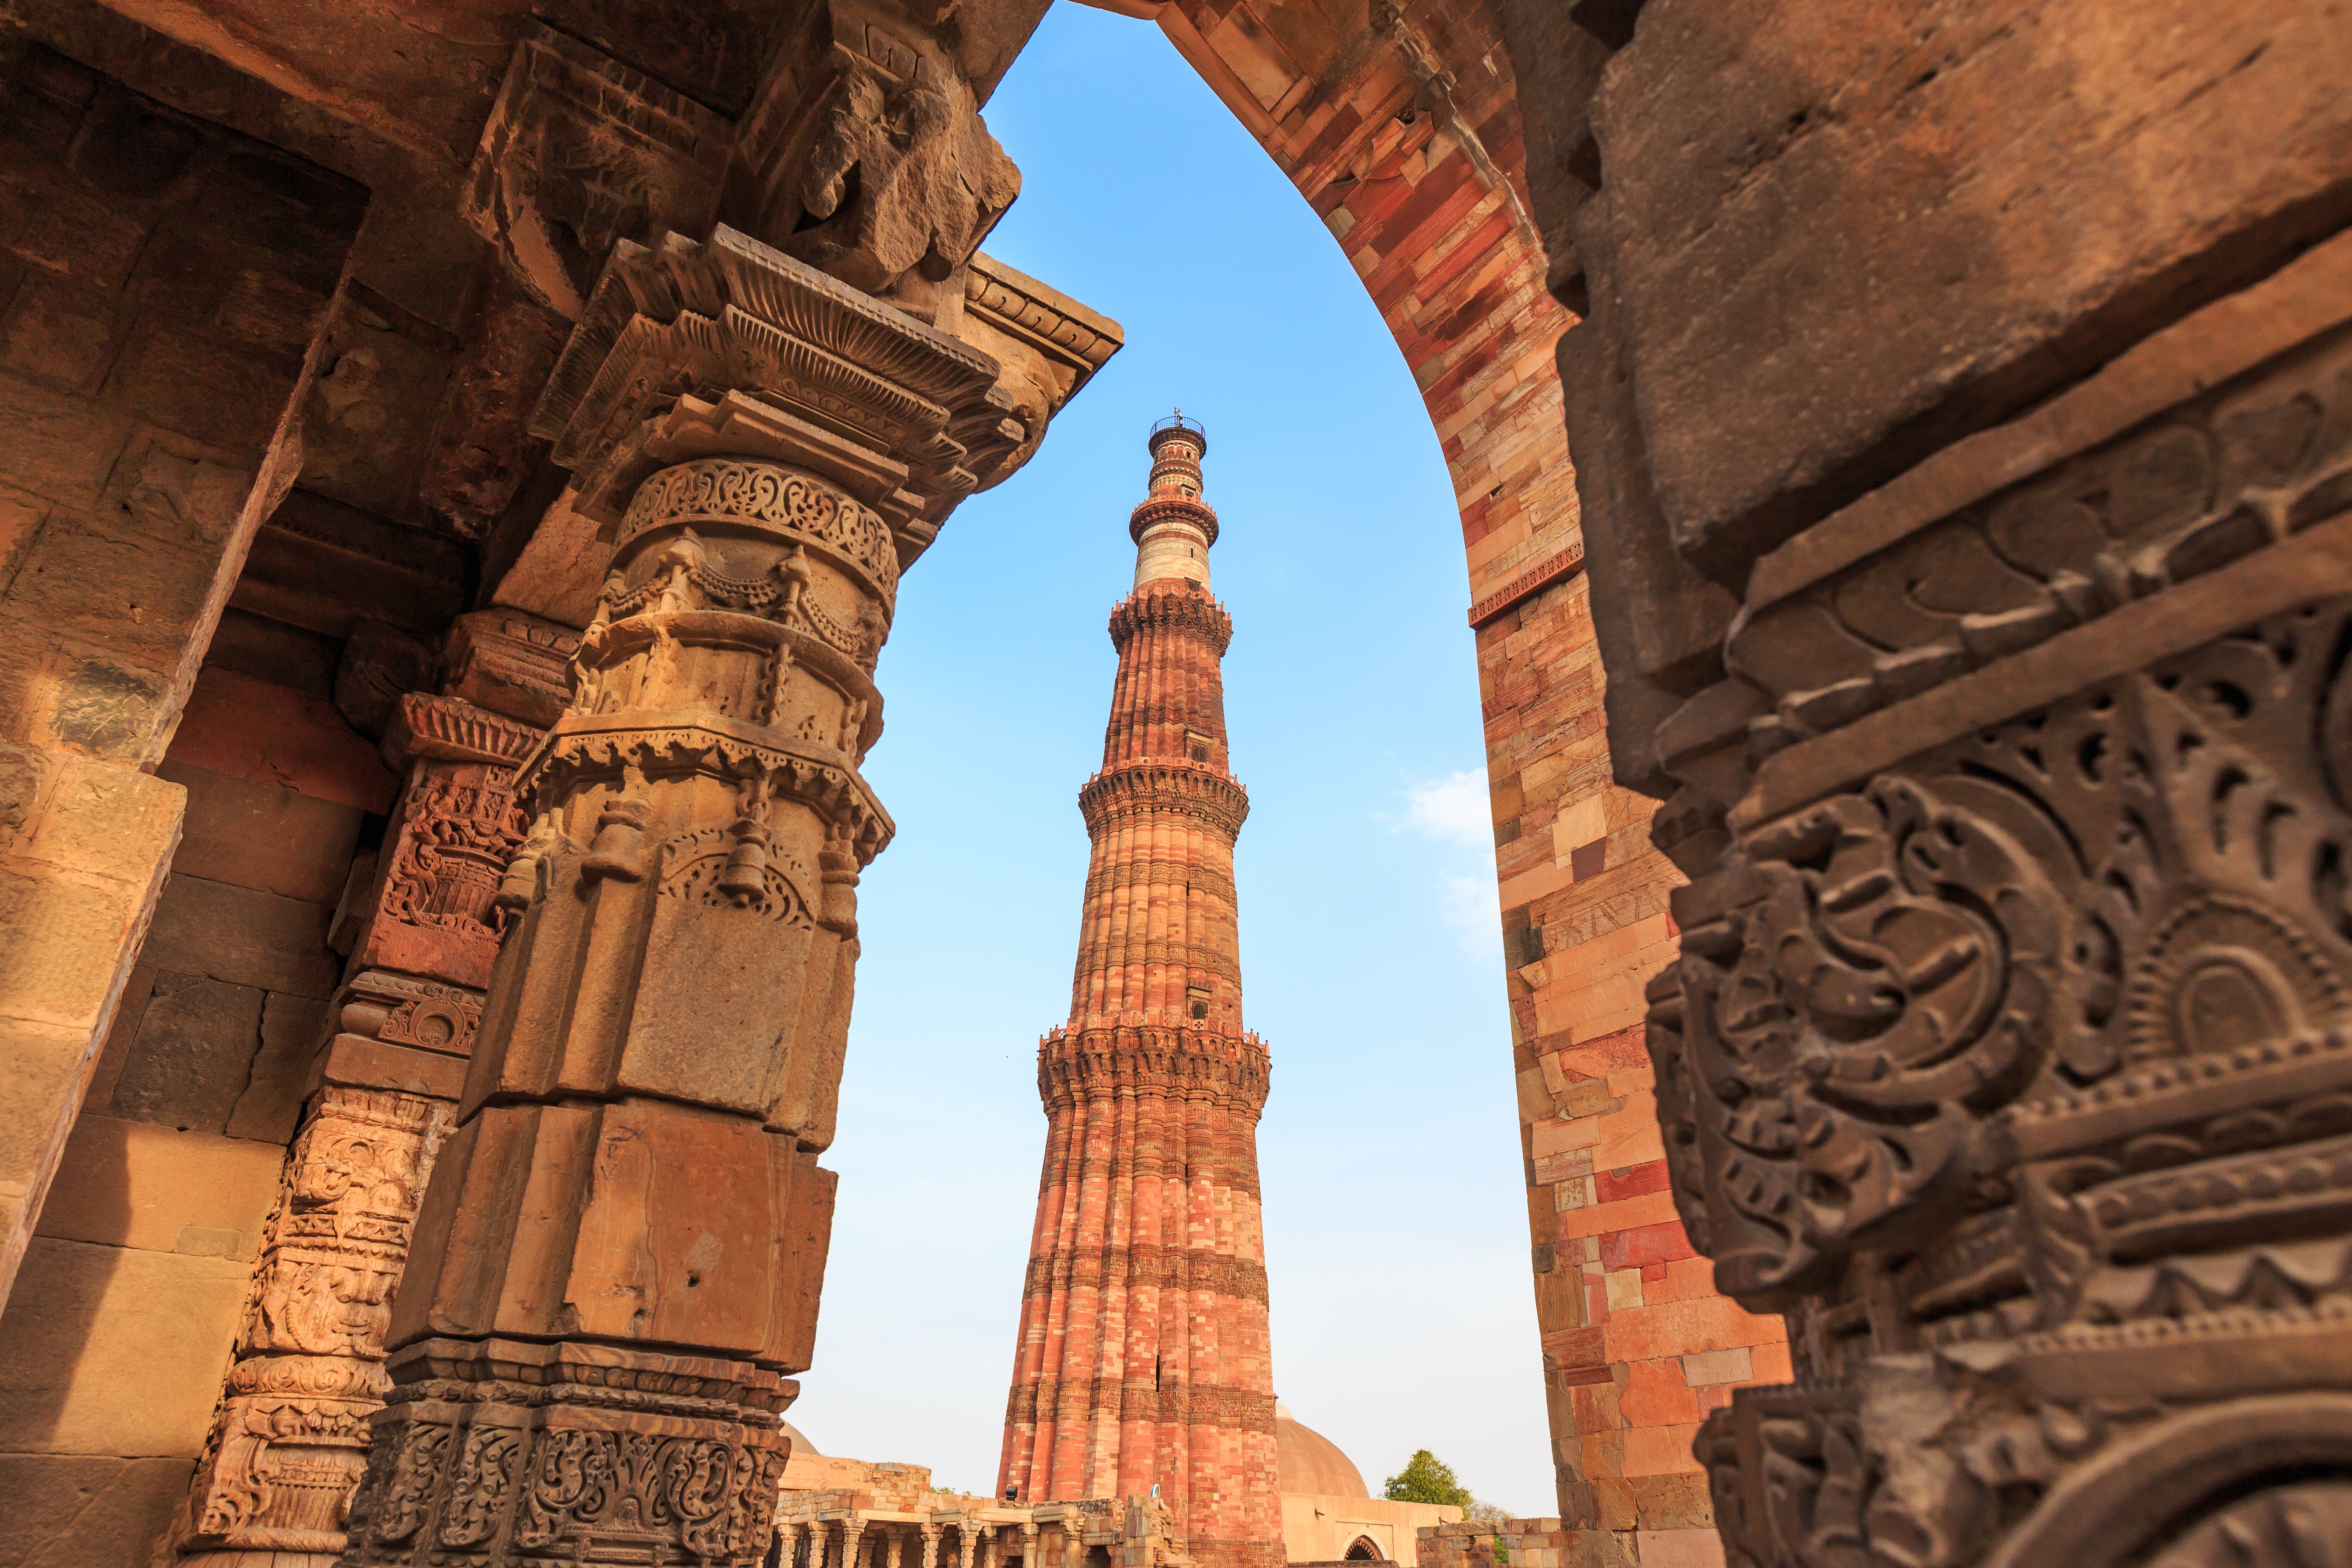 the Qutub Minar in Delhi